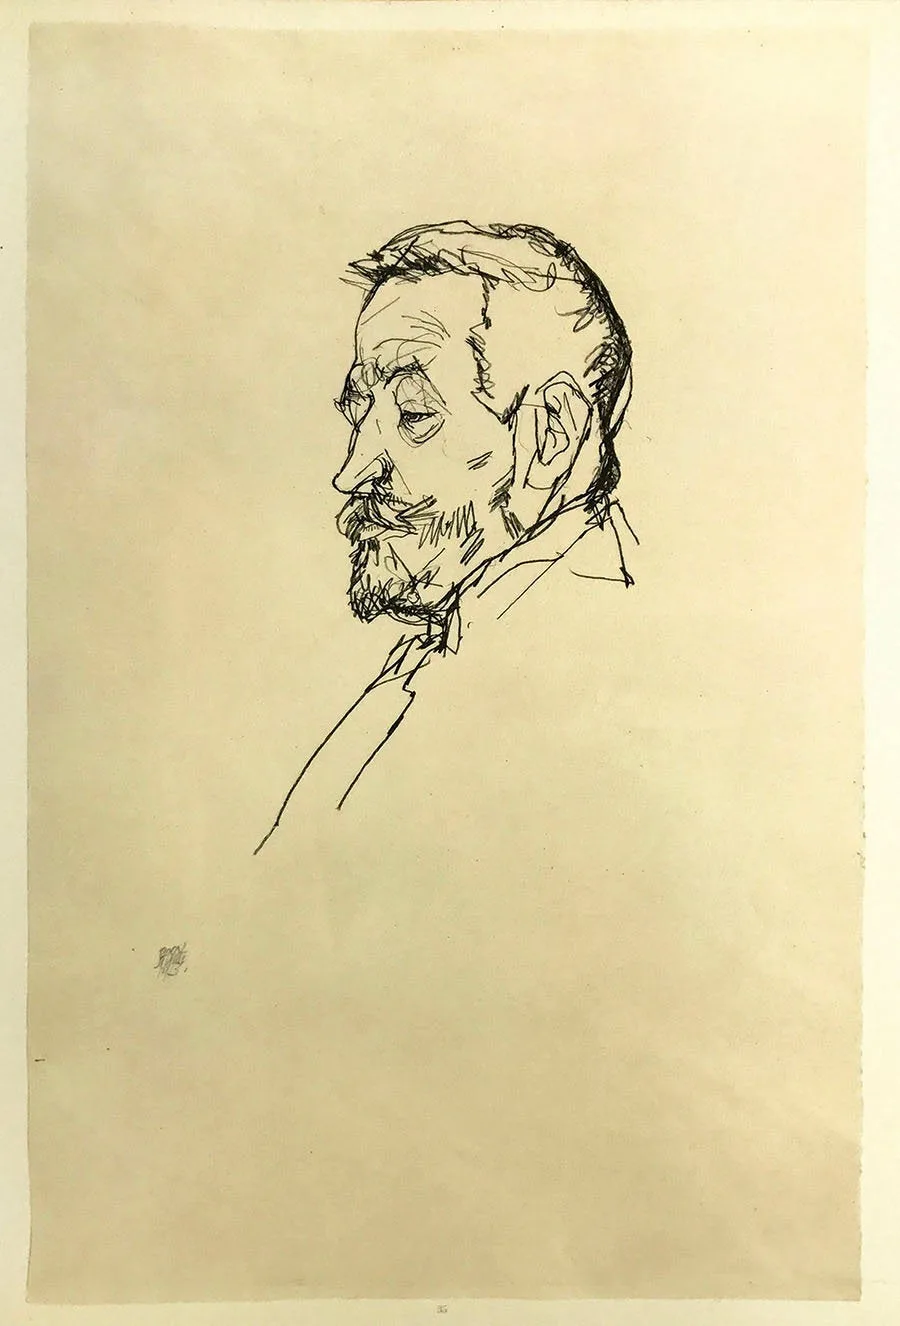 Schiele 35, Lithograph Portrait of Henrich, 1968